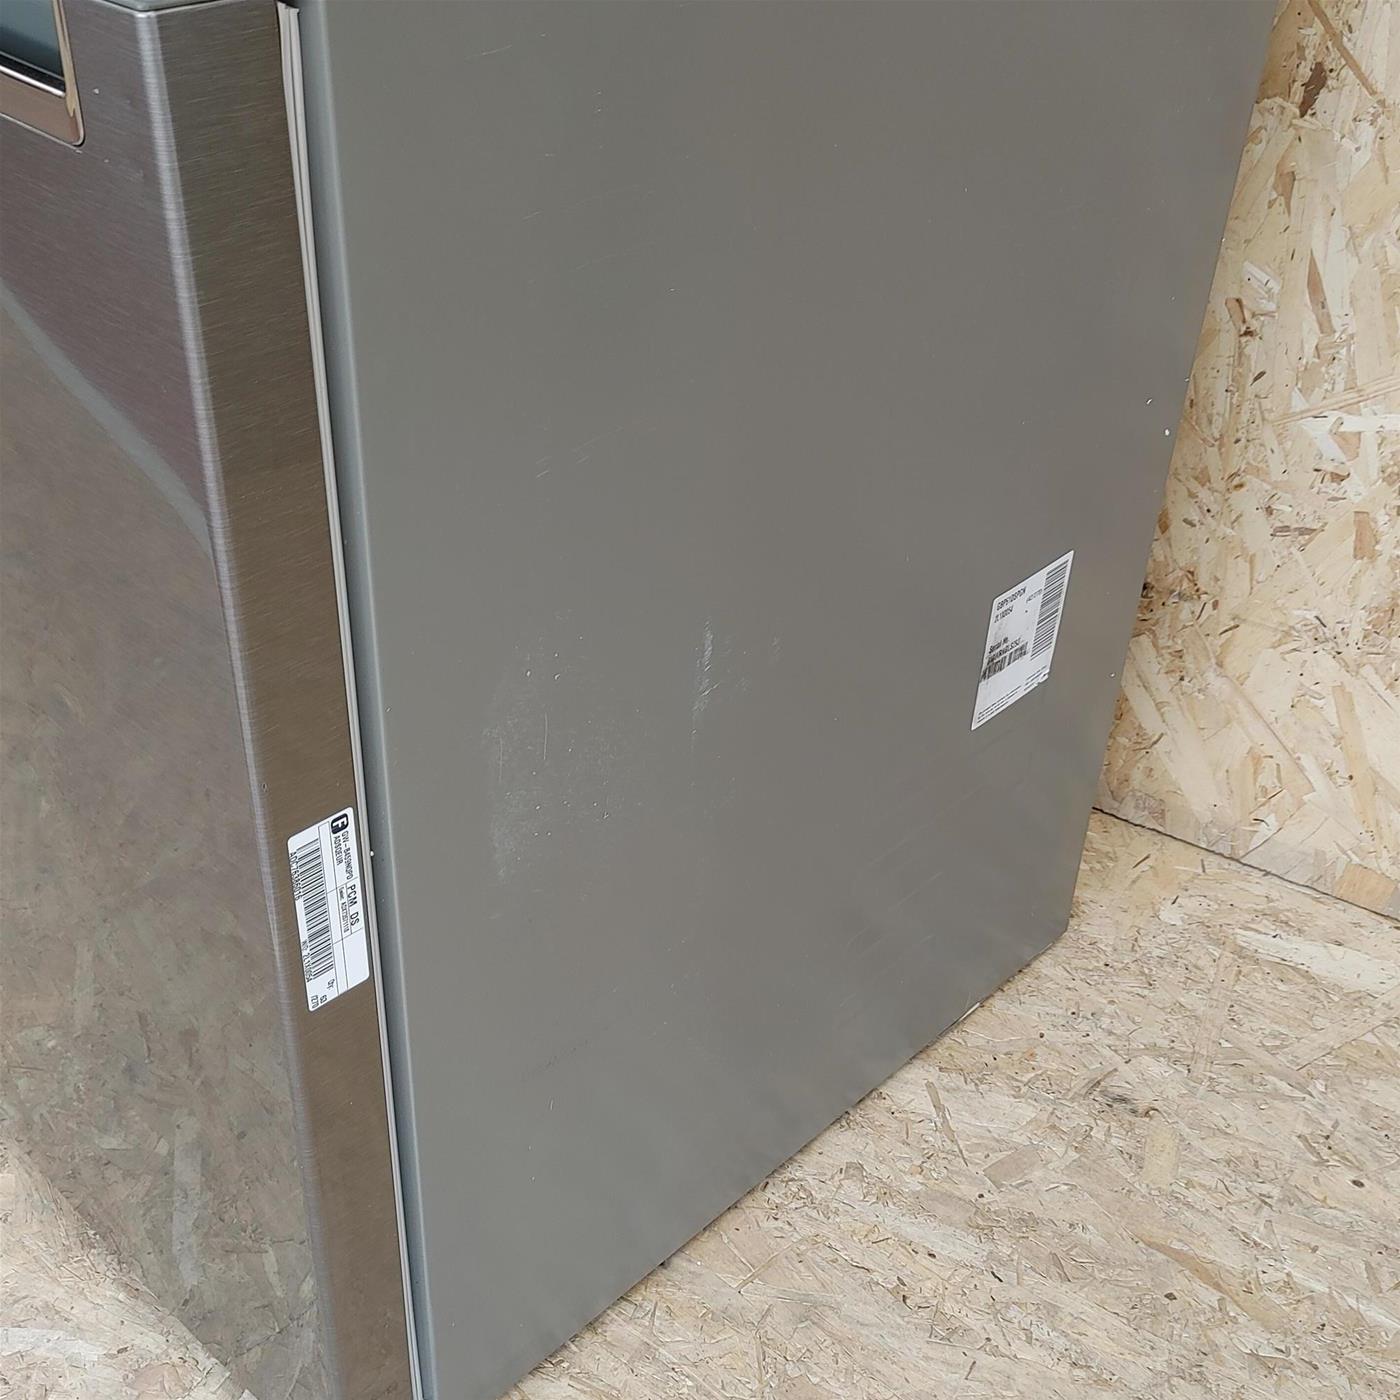 LG GBP61DSPGN frigorifero con congelatore Libera installazione 341 L D Grafite